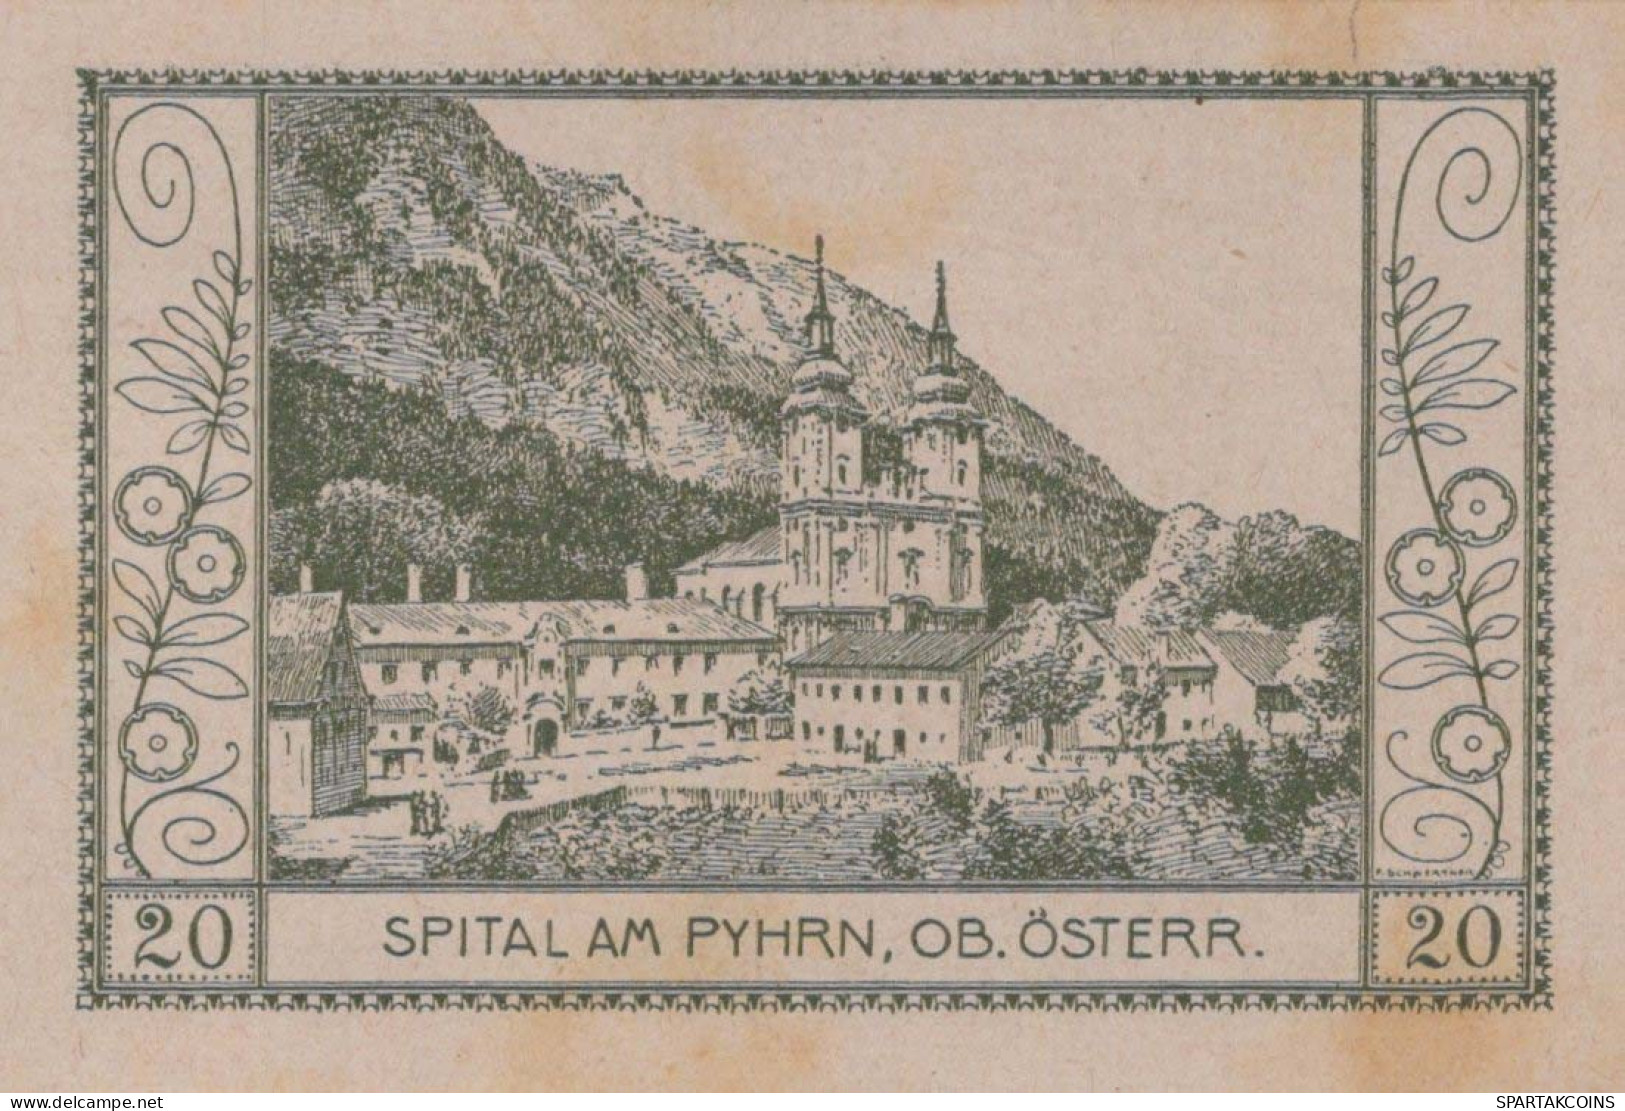 20 HELLER 1920 Stadt SPITAL AM PYHRN Oberösterreich Österreich Notgeld #PE843 - [11] Lokale Uitgaven